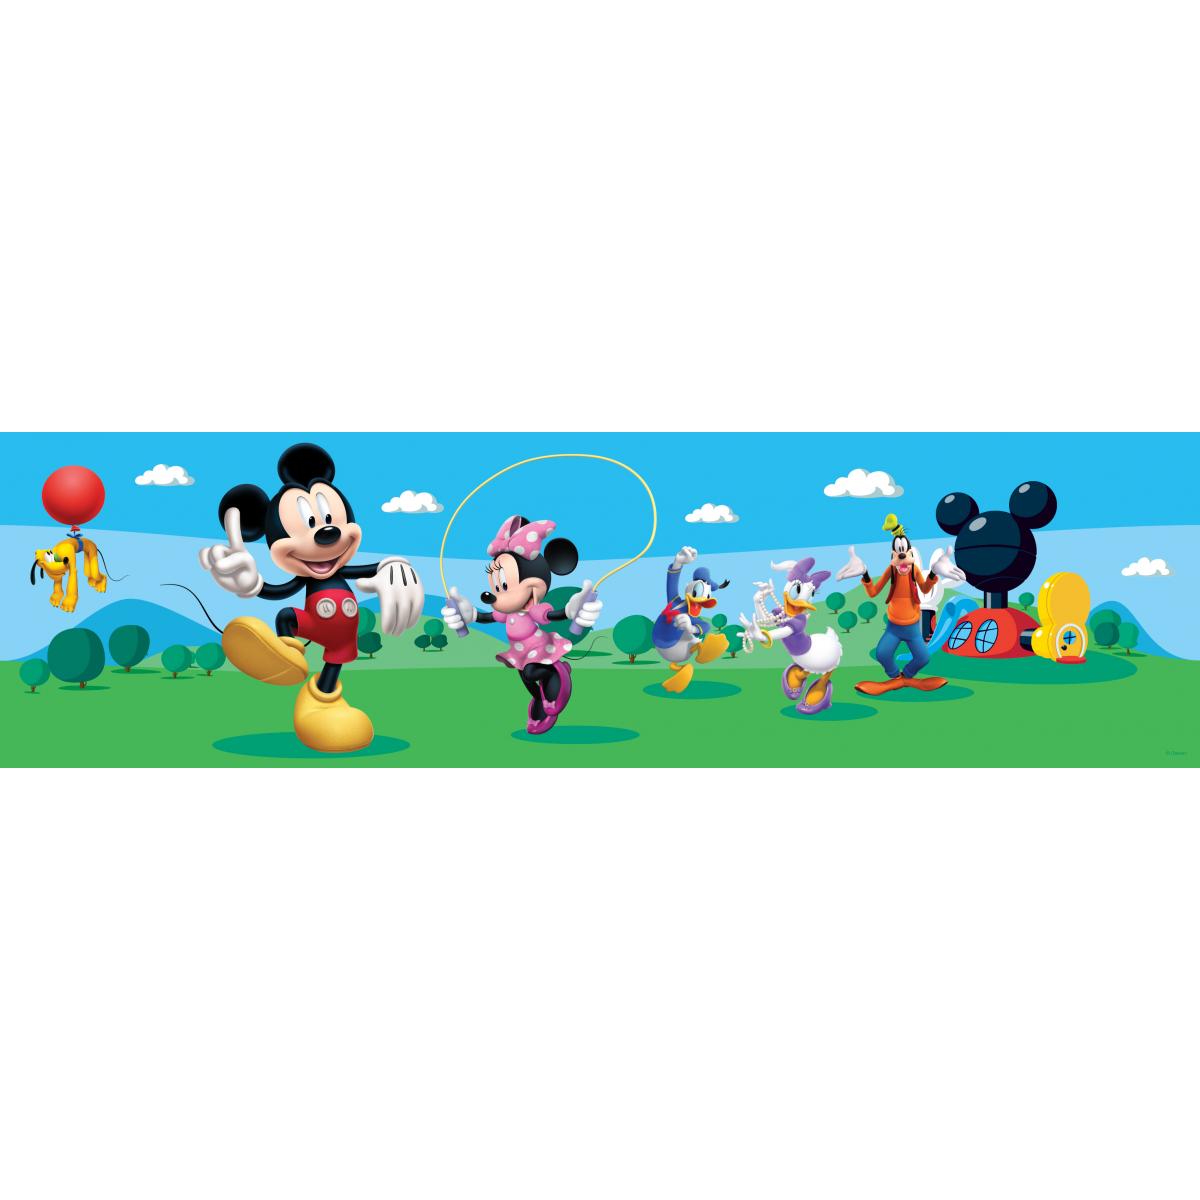 Décoration chambre enfant Disney Disney frise de papier peint adhésive Mickey Mouse vert et bleu - 600029 - 10 x 500 cm